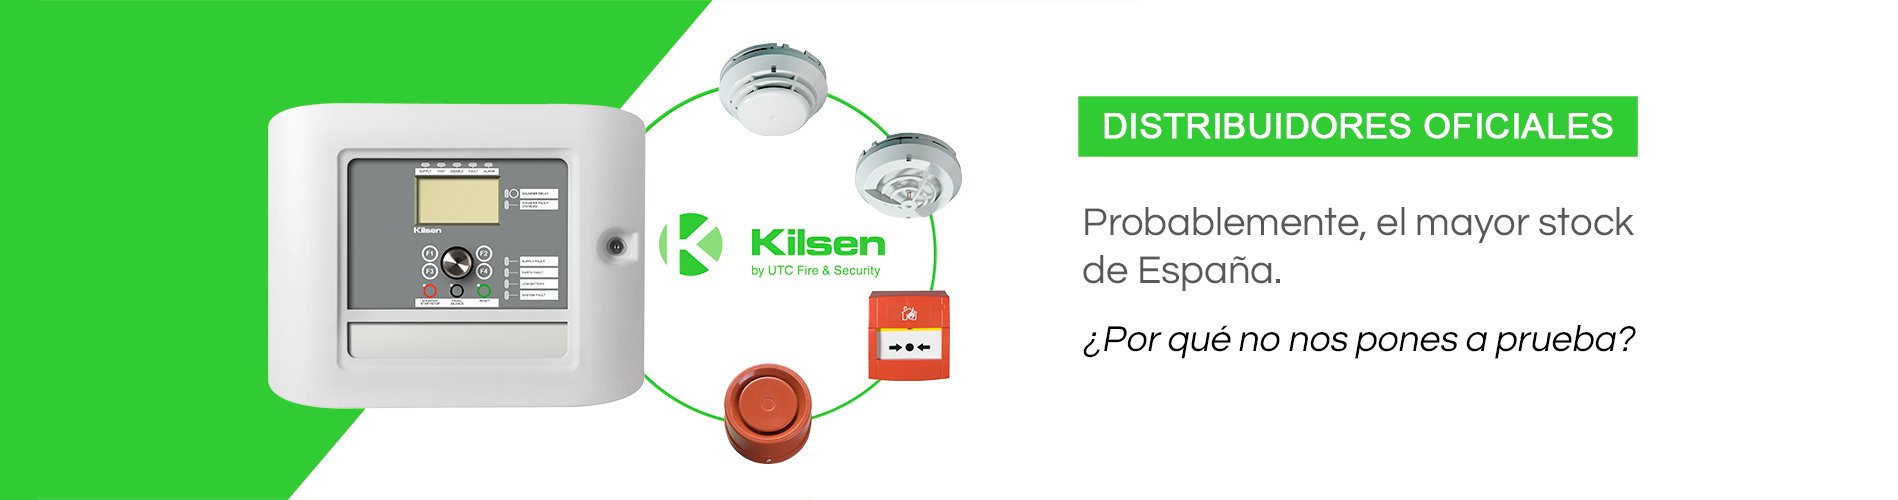 Datsa Seguridad - Distribuidores Oficiales Kilsen Incendio